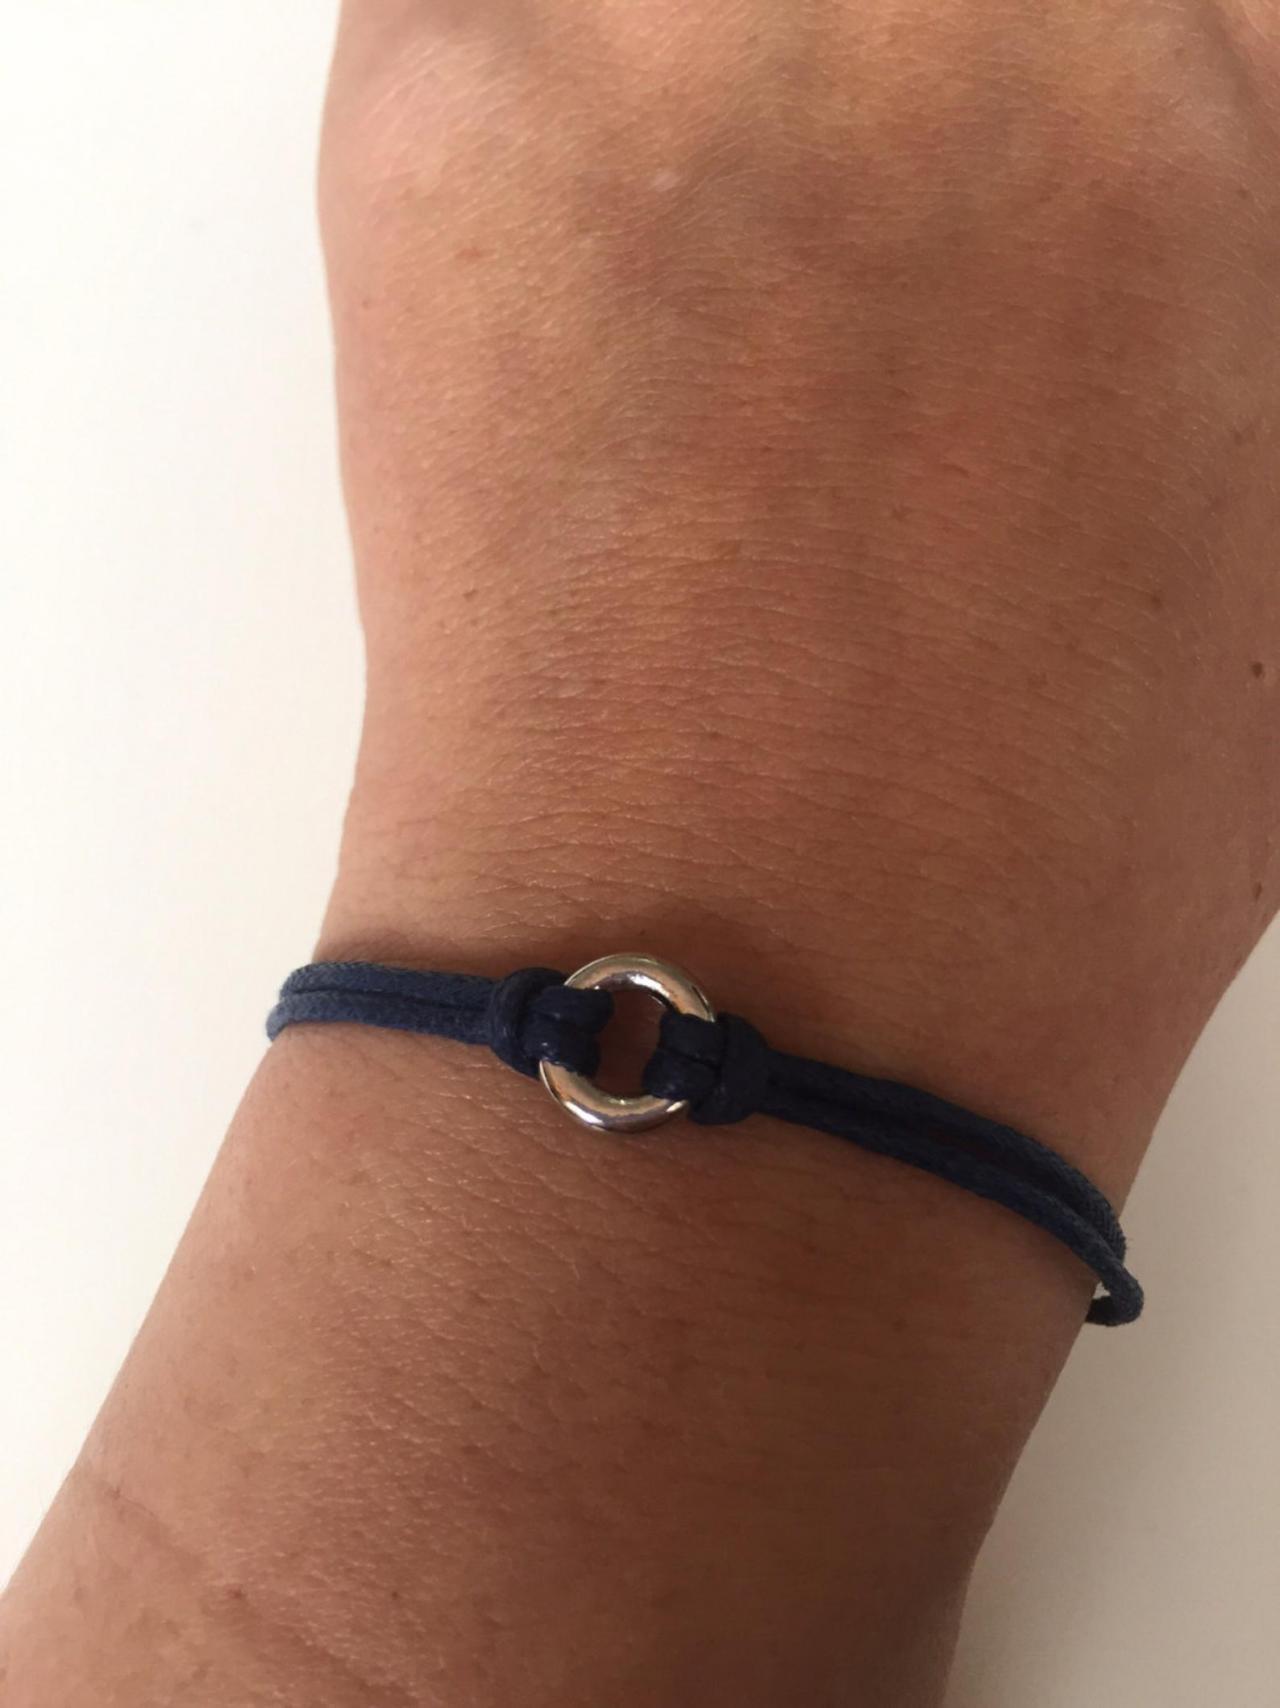 Blue Waxed Cotton Bracelet 312- Rocker Friendship Metal Ring Waxed Cotton Bracelet Gift Adjustable Current Womenswear Unique Innovative